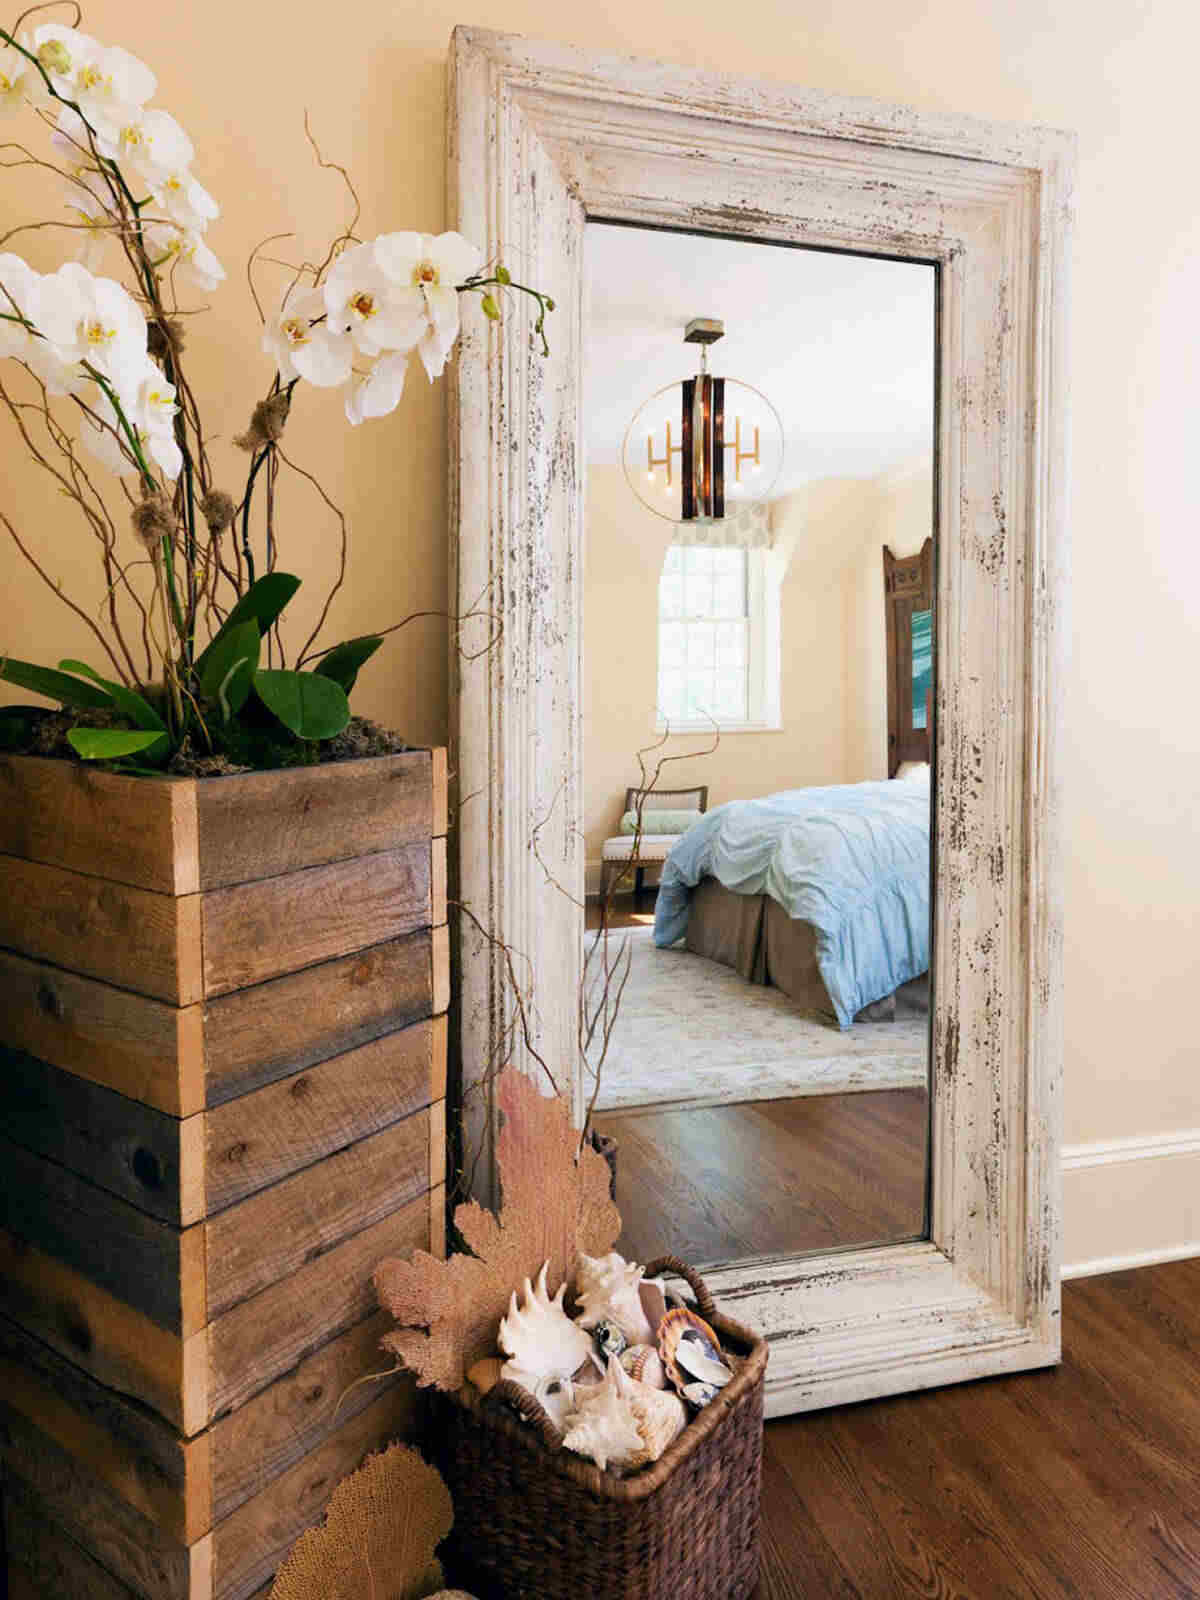 10 Desain Cermin untuk Hiasan Dinding di Rumah, Energinya Positif